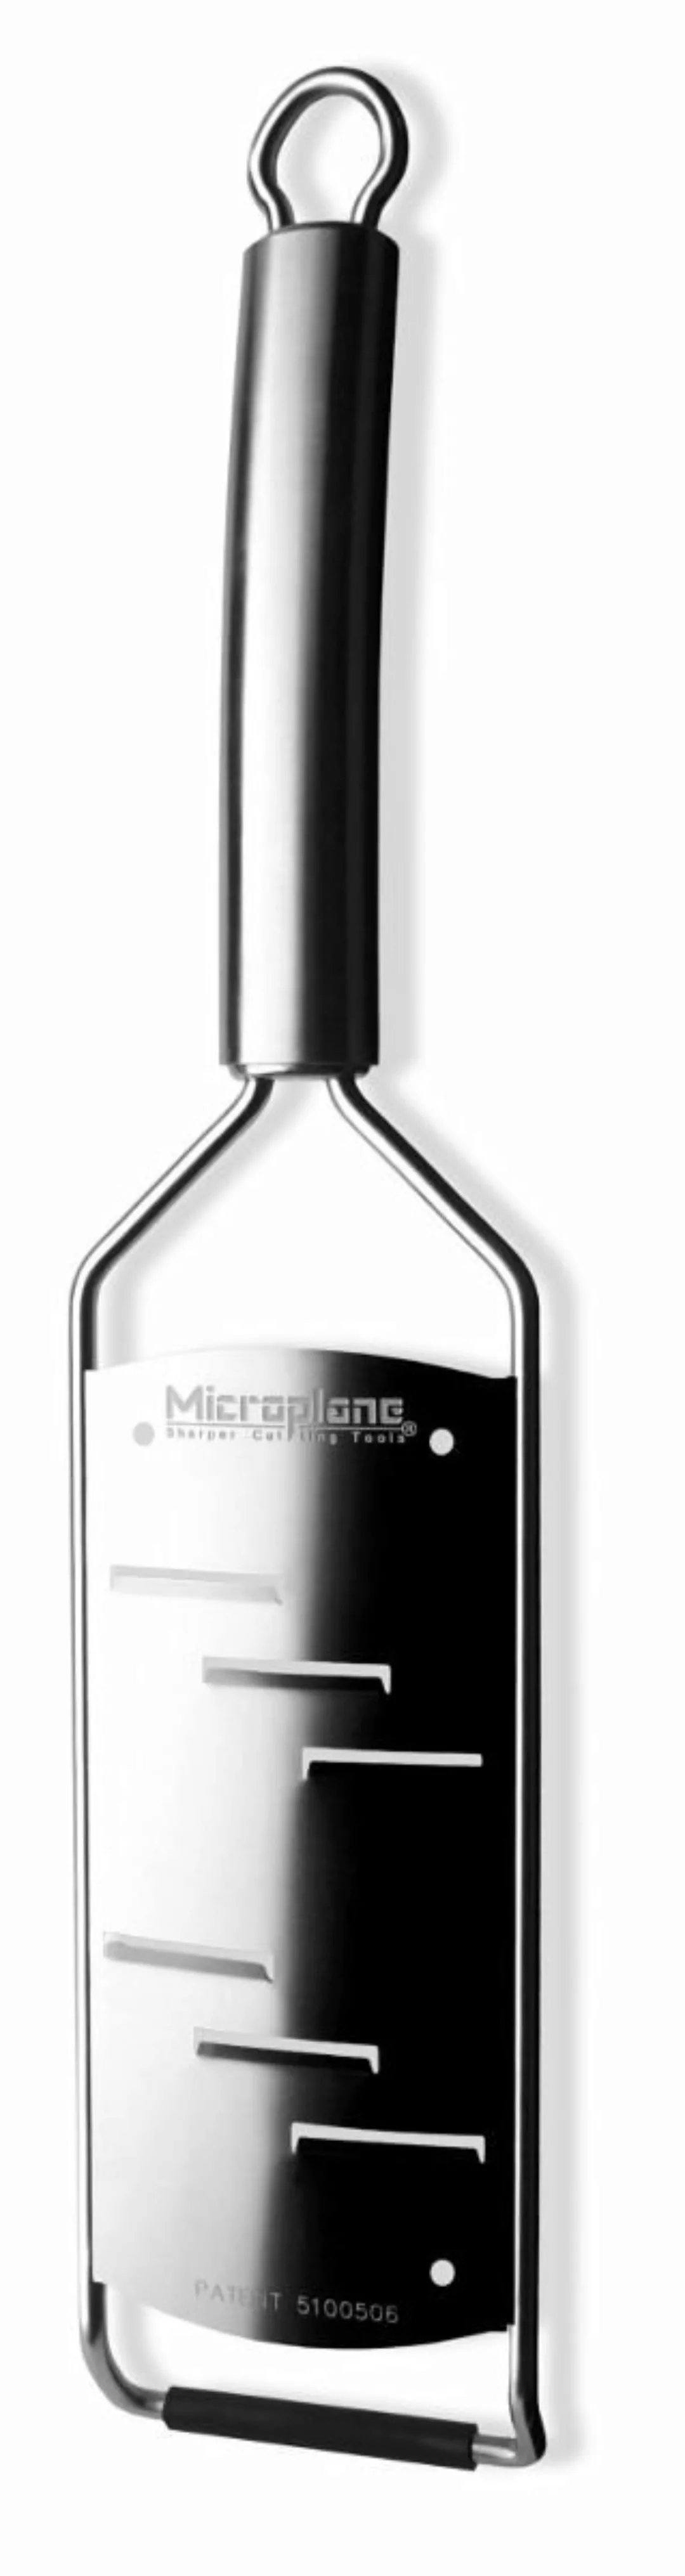 Microplane Reiben & Hobeln Microplane Professional Serie große Raspel 31,2 günstig online kaufen